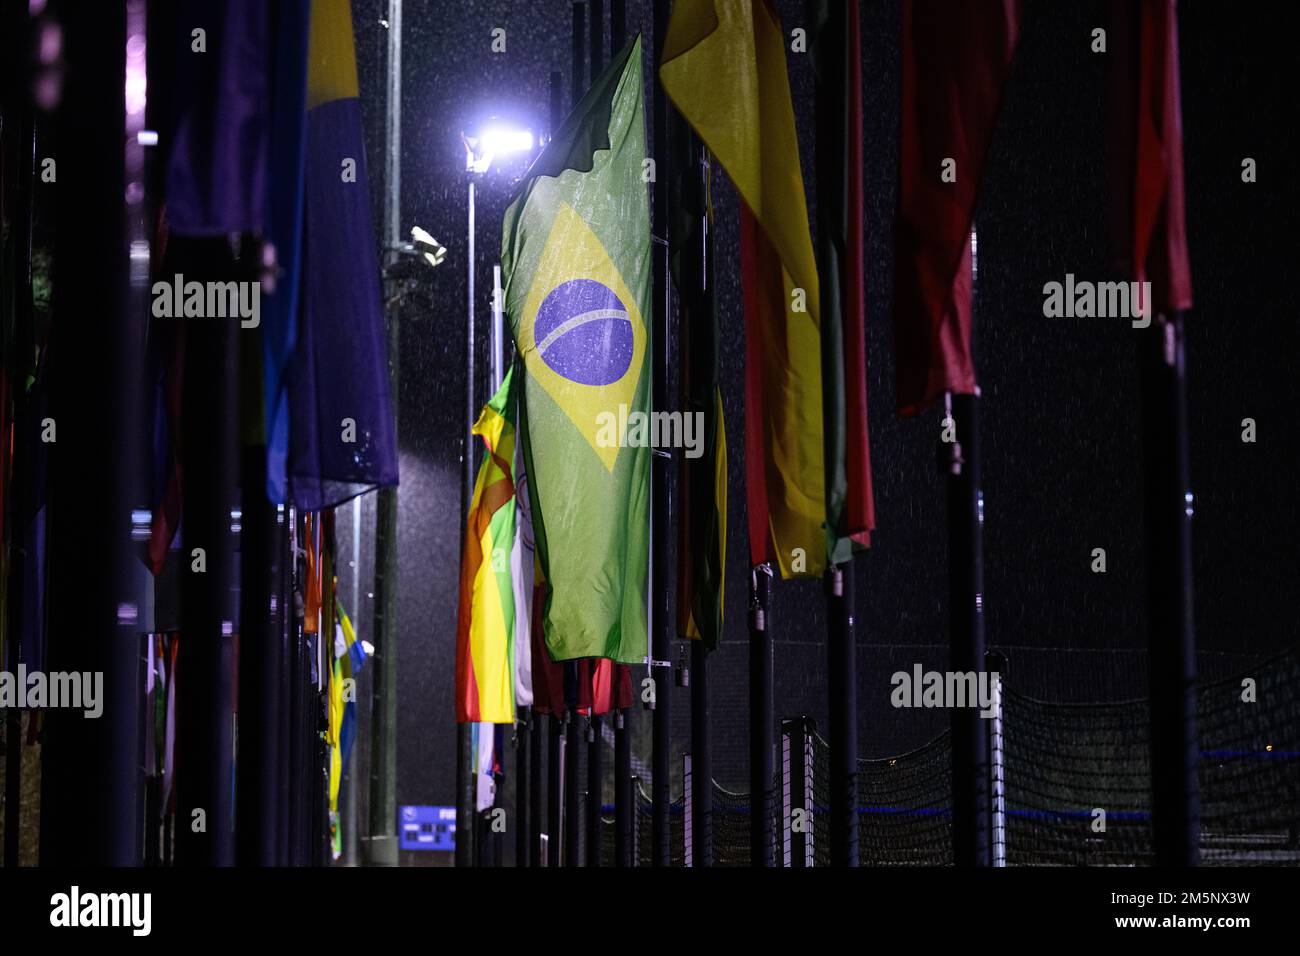 (221230) -- ZURICH, 30 décembre 2022 (Xinhua) -- les drapeaux des associations membres de la FIFA flottent à la moitié du personnel au siège de la FIFA, le foyer de la FIFA, en hommage à Pele à Zurich, Suisse, le 29 décembre 2022 . (Photo par Harold Cunningham/FIFA) Banque D'Images